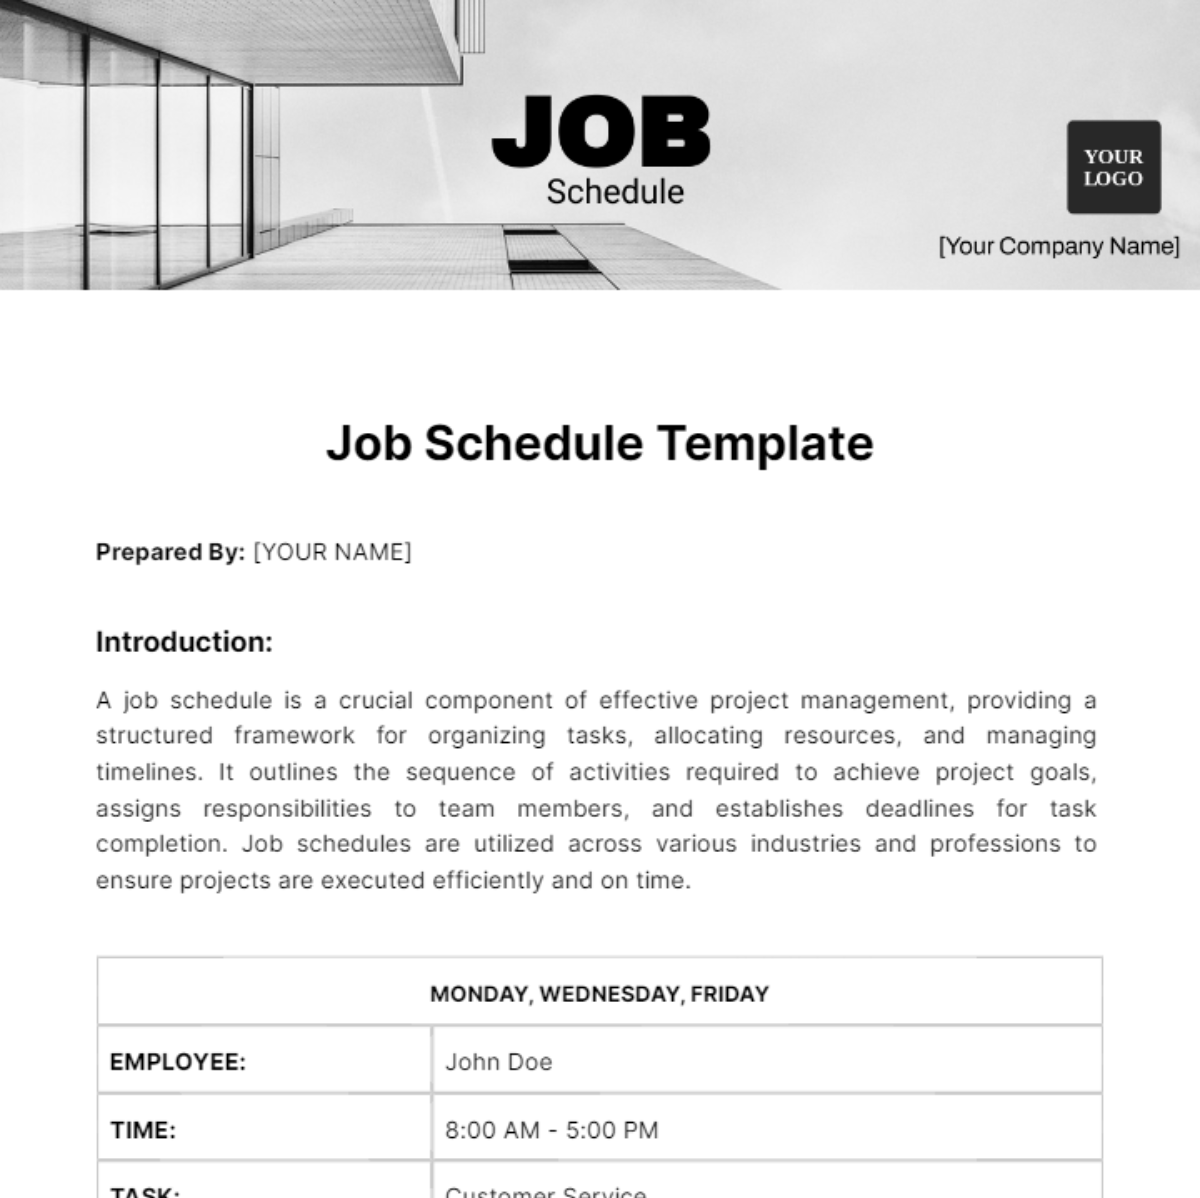 Job Schedule Template